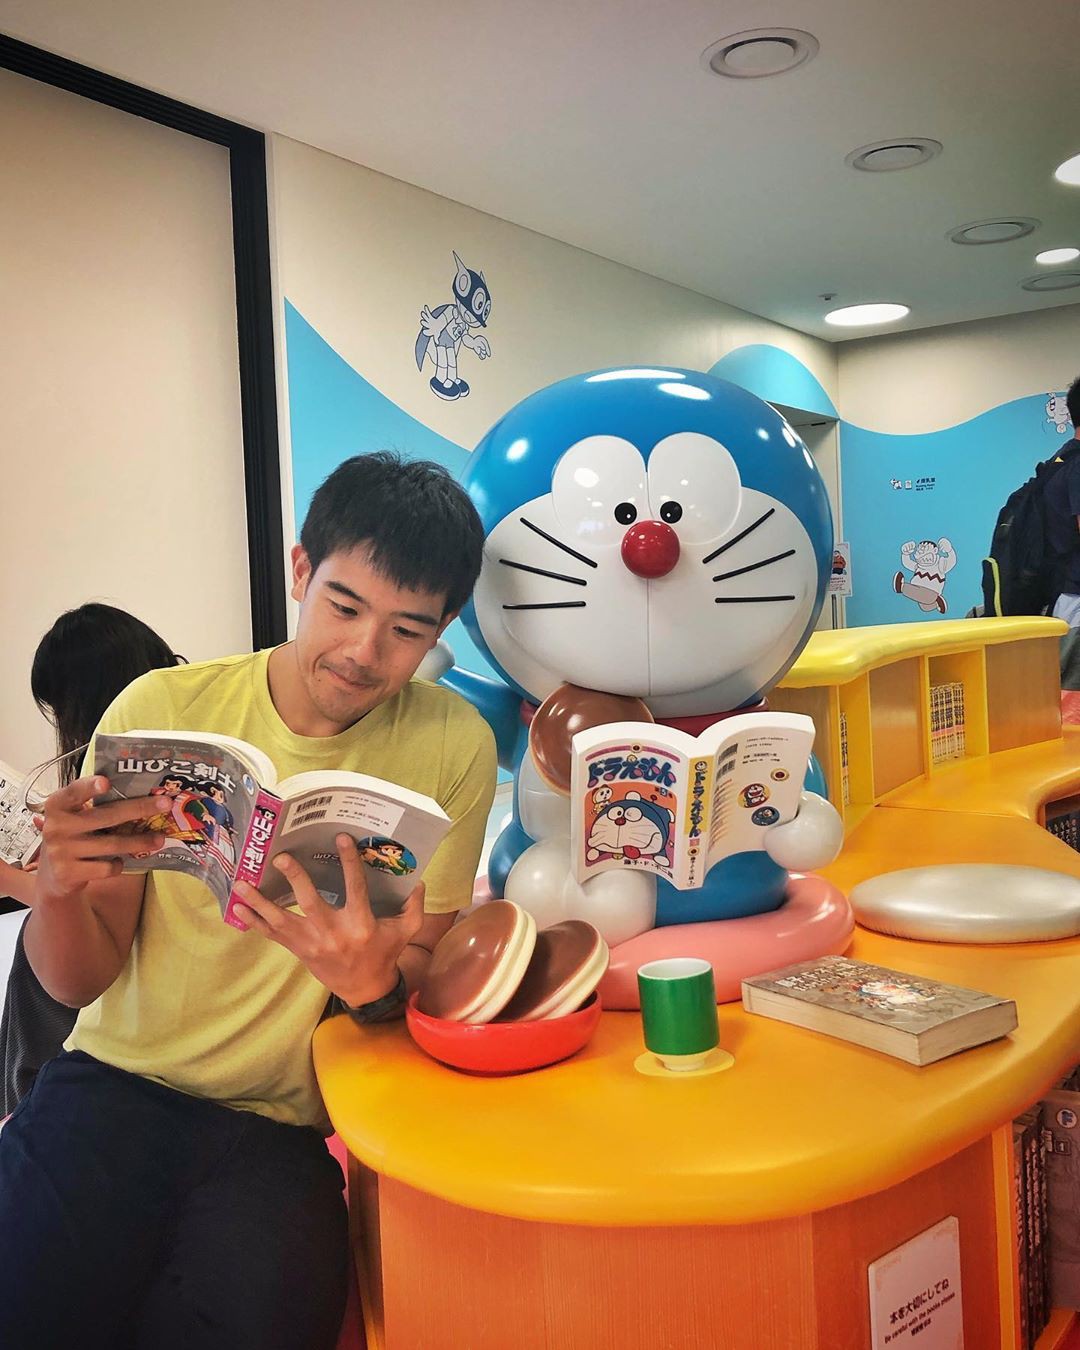 Bảo tàng Doraemon: Hãy đến thăm bảo tàng Doraemon, nơi bạn sẽ được khám phá thế giới của chú mèo máy hậu đậu nhất mọi thời đại. Tại đây, bạn sẽ được tiếp cận với hàng trăm đồ chơi và bộ sưu tập đặc biệt, hứa hẹn sẽ mang đến cho bạn những giờ phút thư giãn và tận hưởng không thể quên.